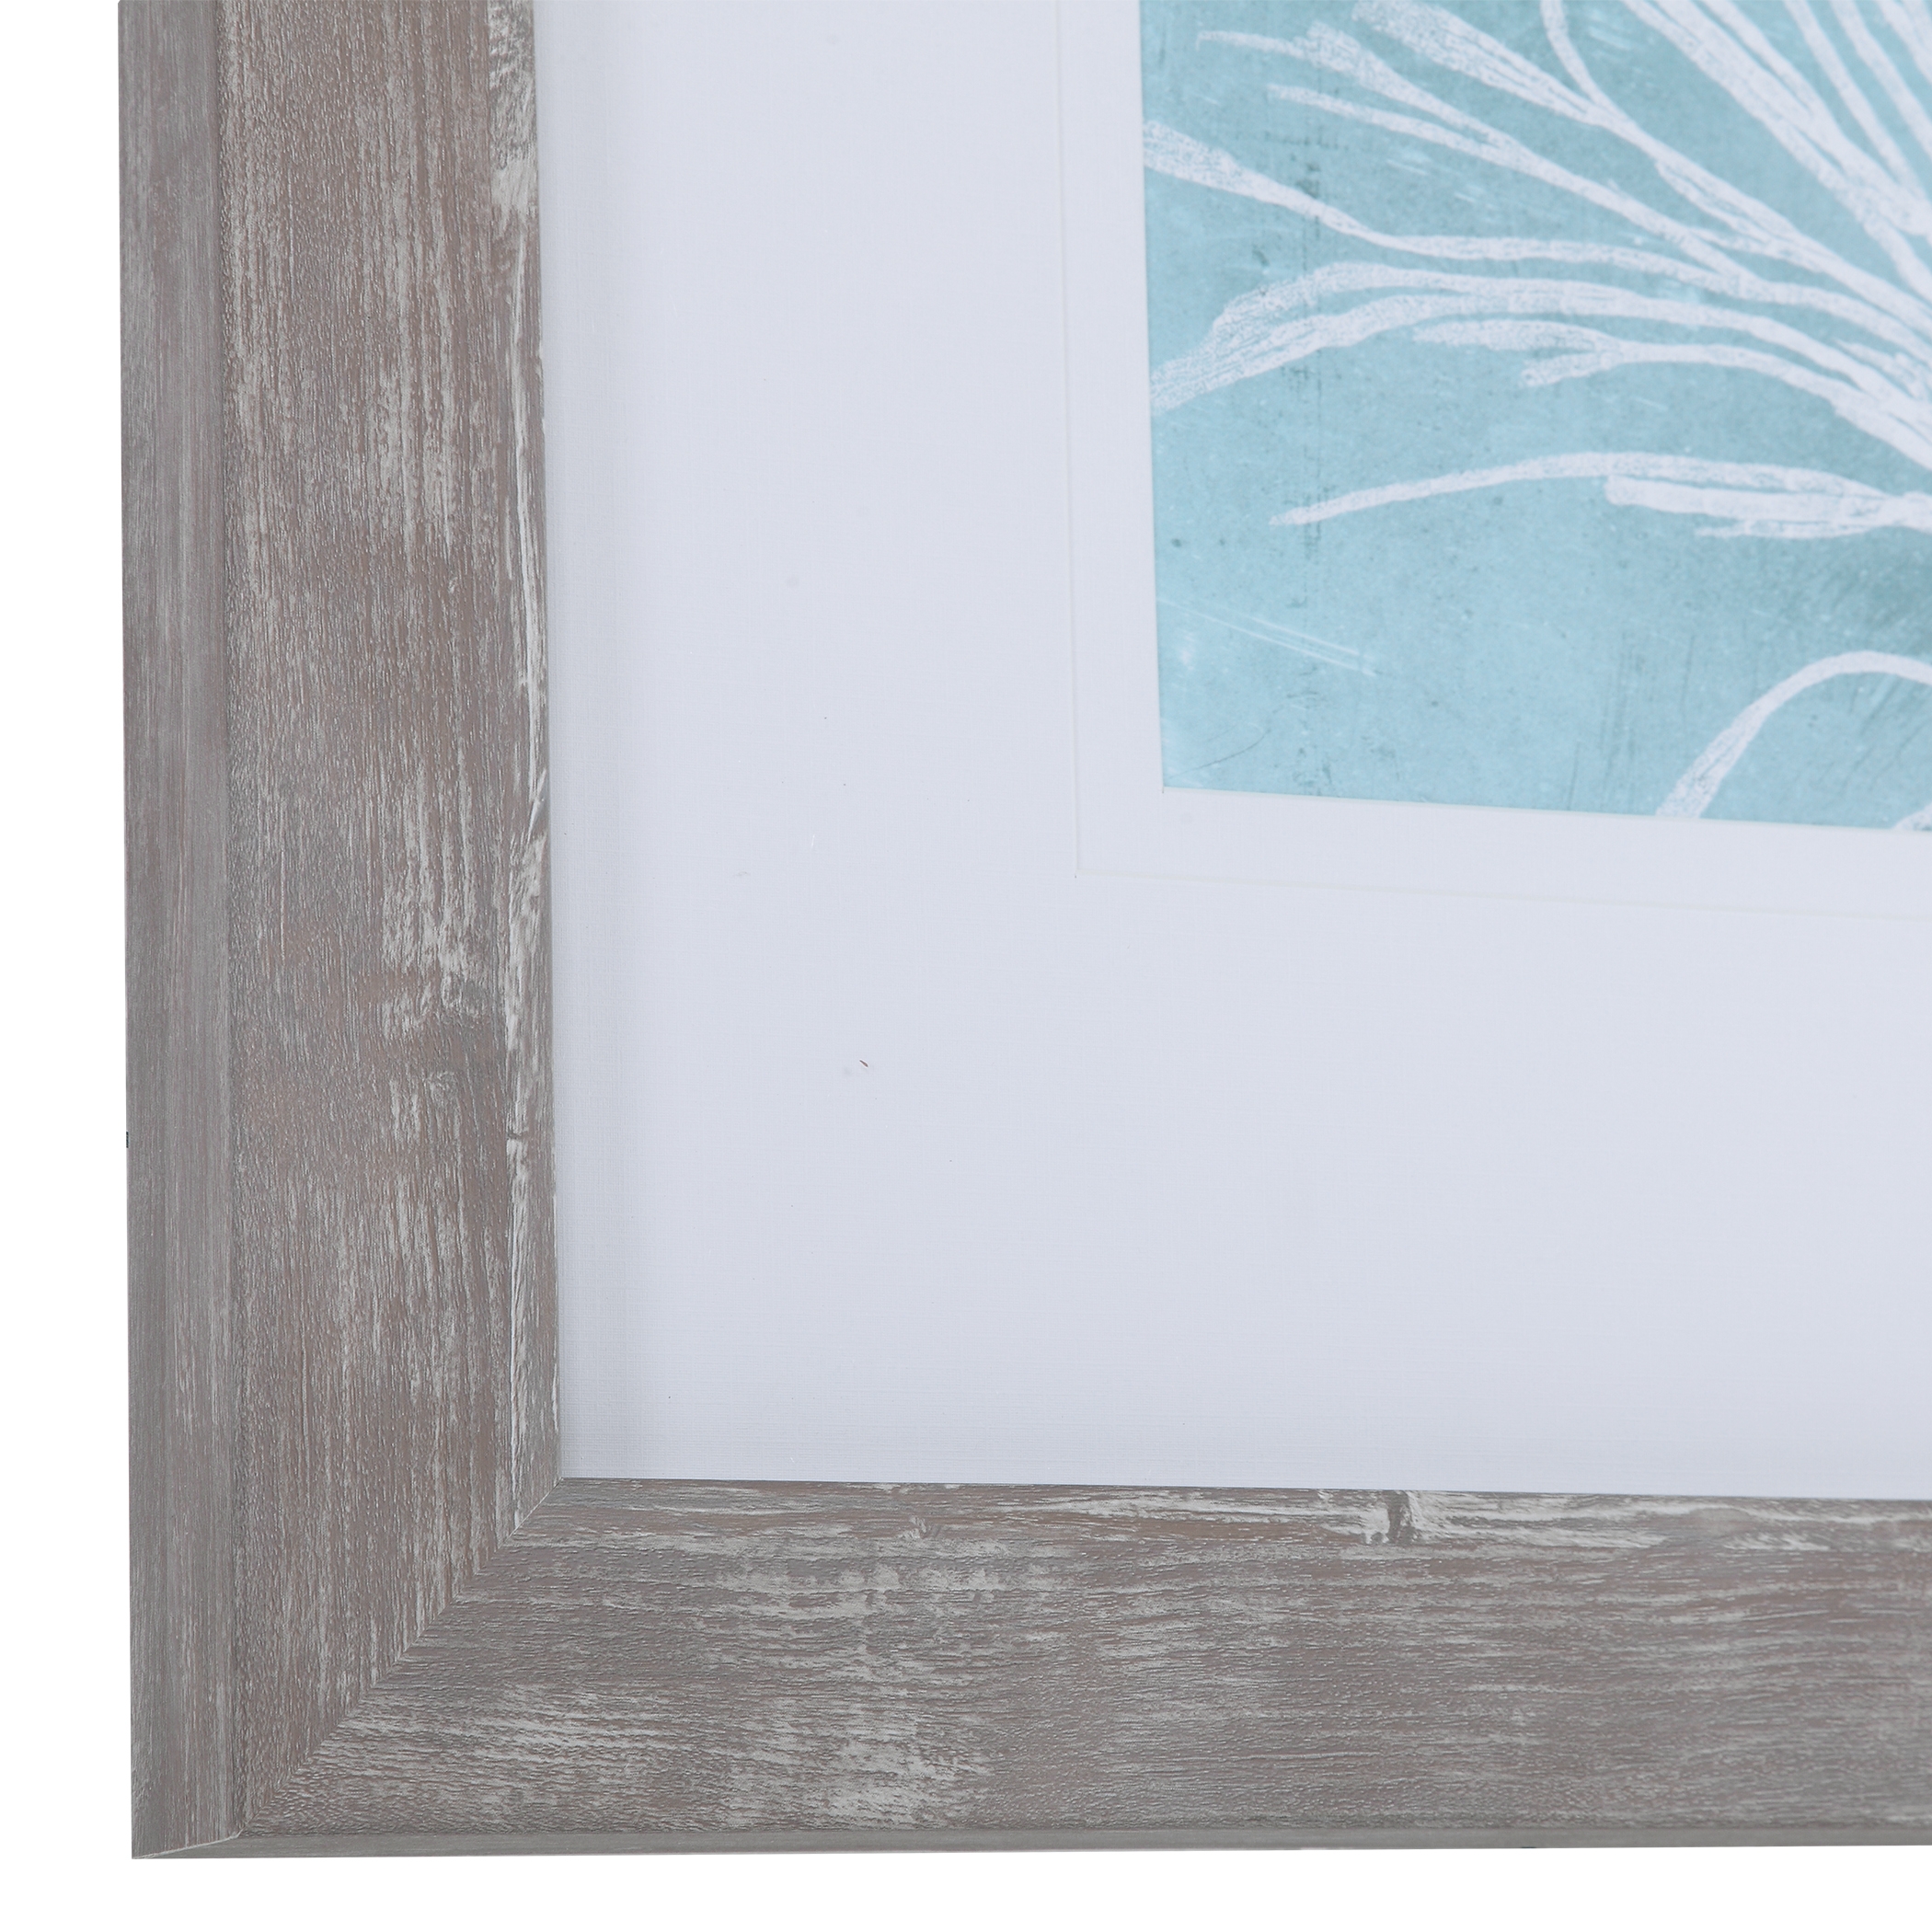 Seaweed On Aqua Framed Prints S/4 - Image 2